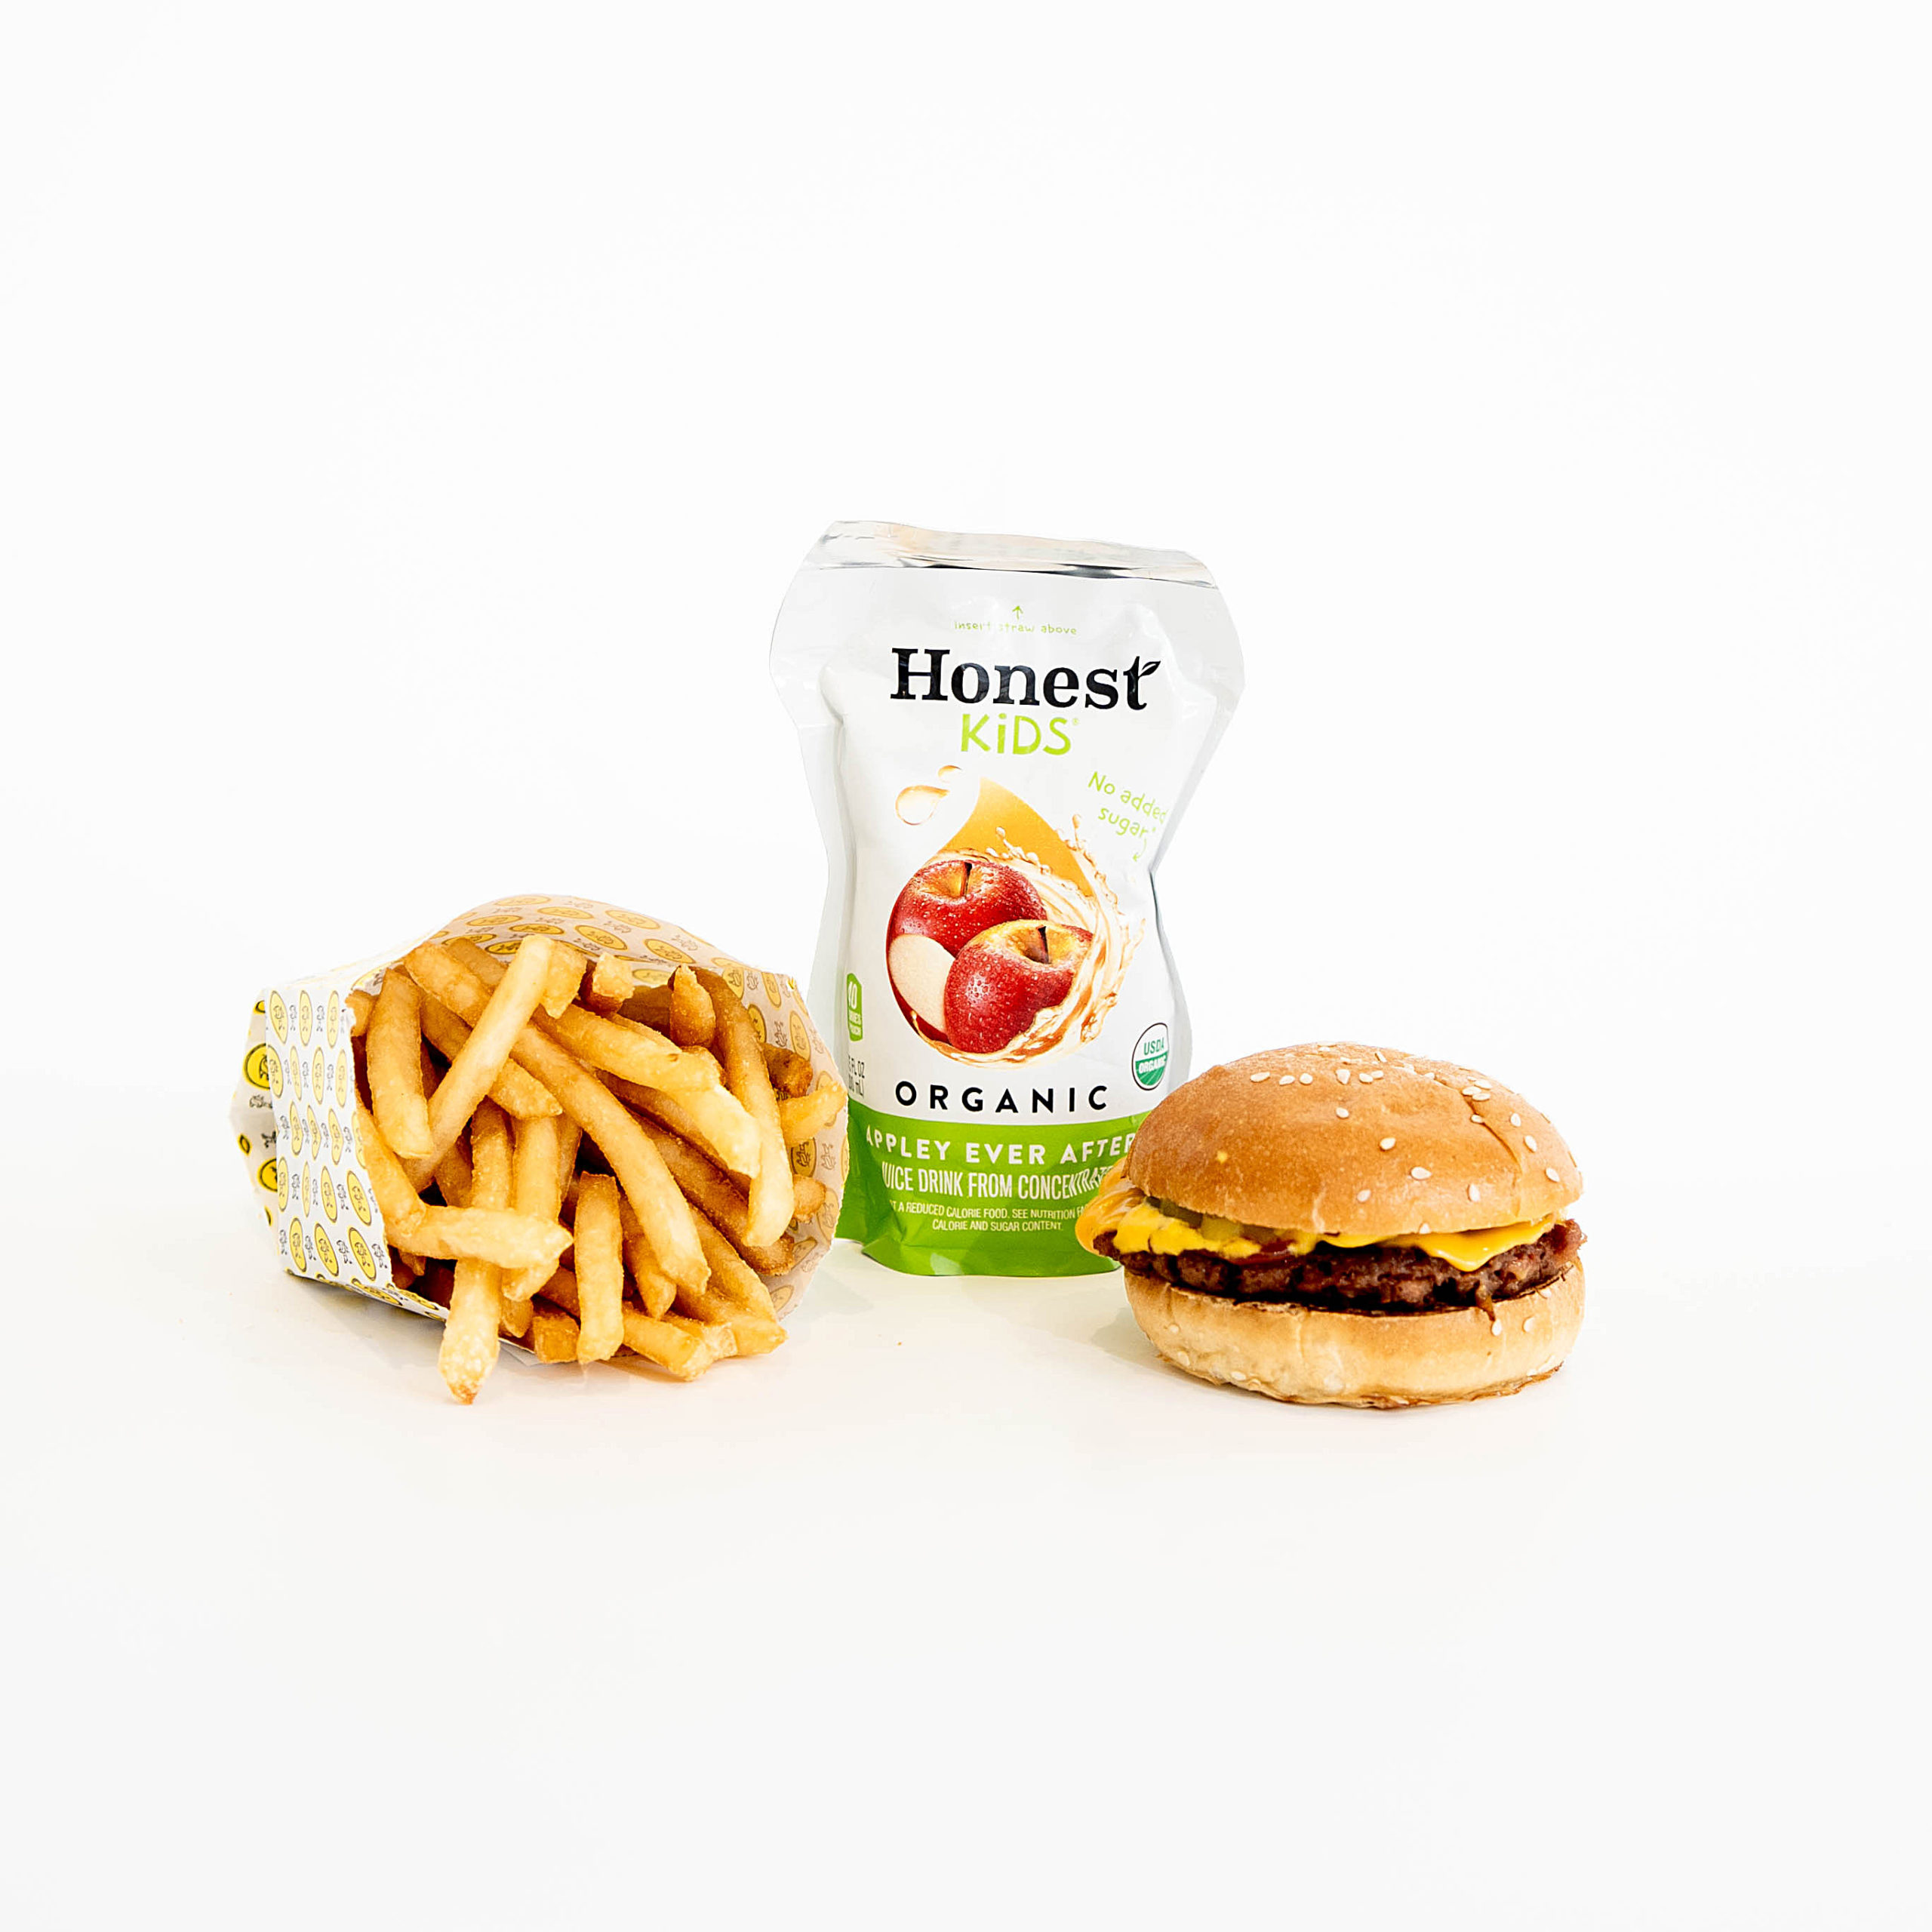 plant-based burger, cheeseburger, fries